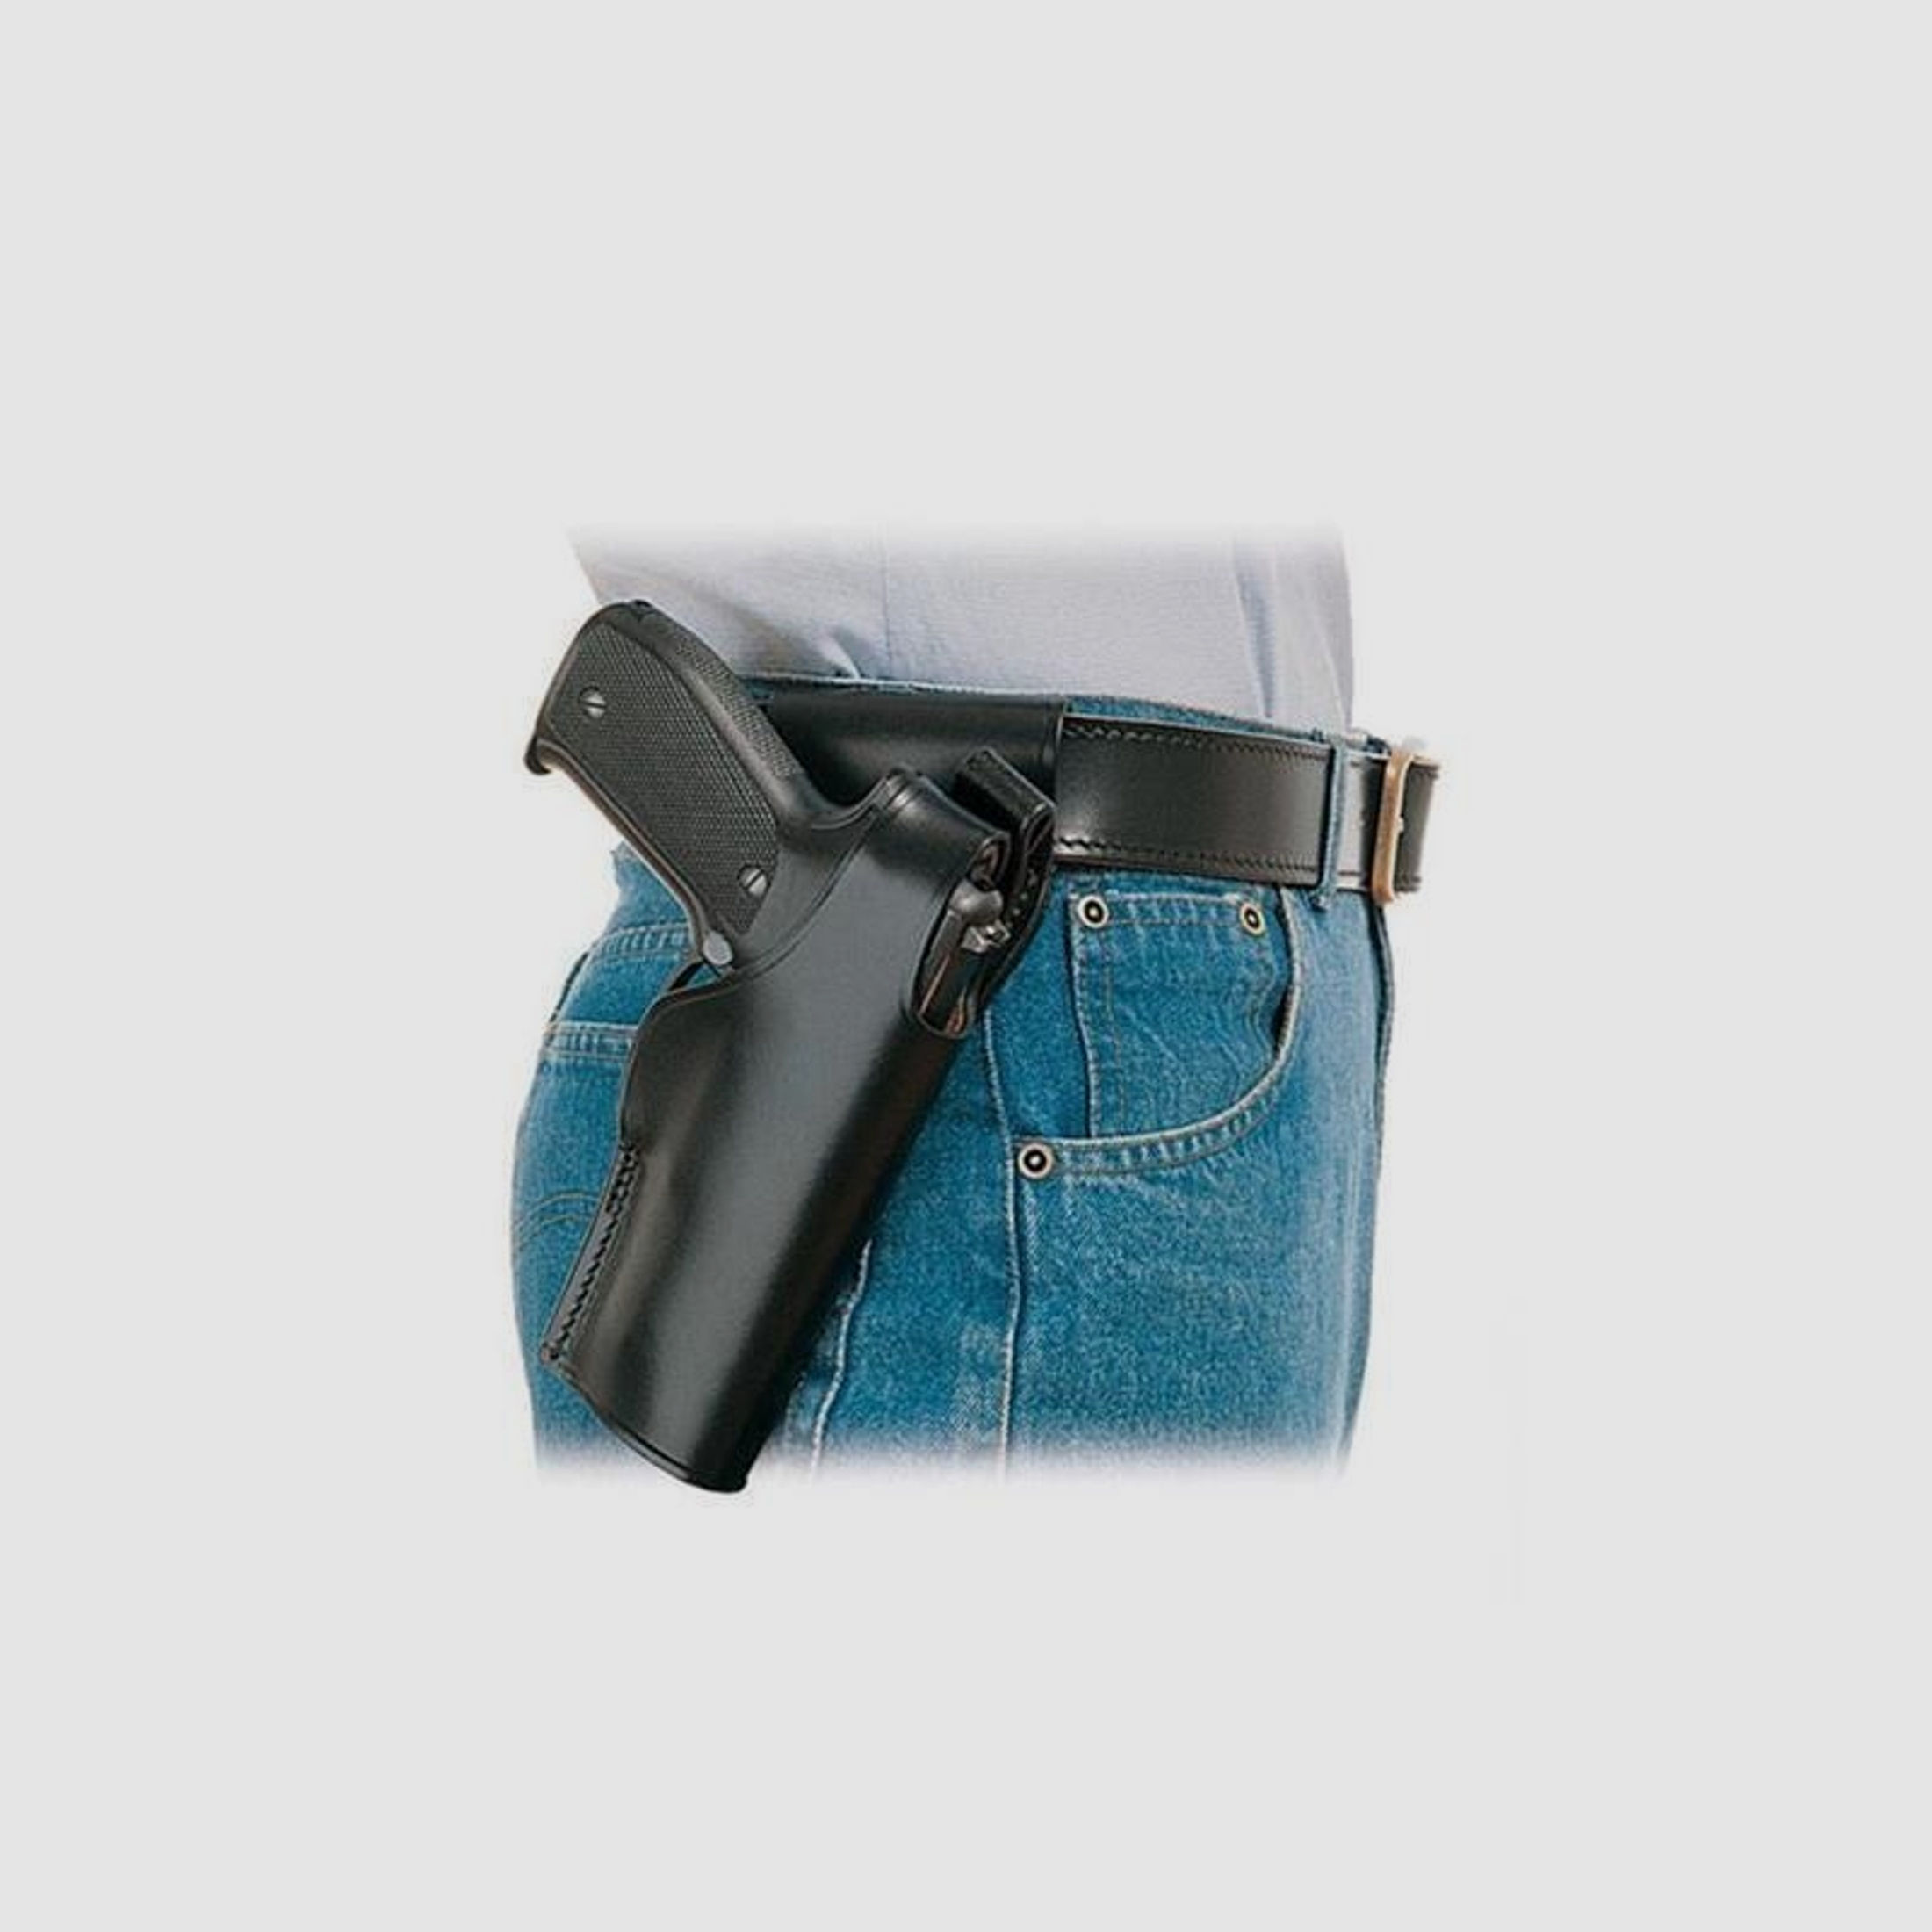 Gürtelholster SPITFIRE Glock 29/30 Braun Rechtshänder